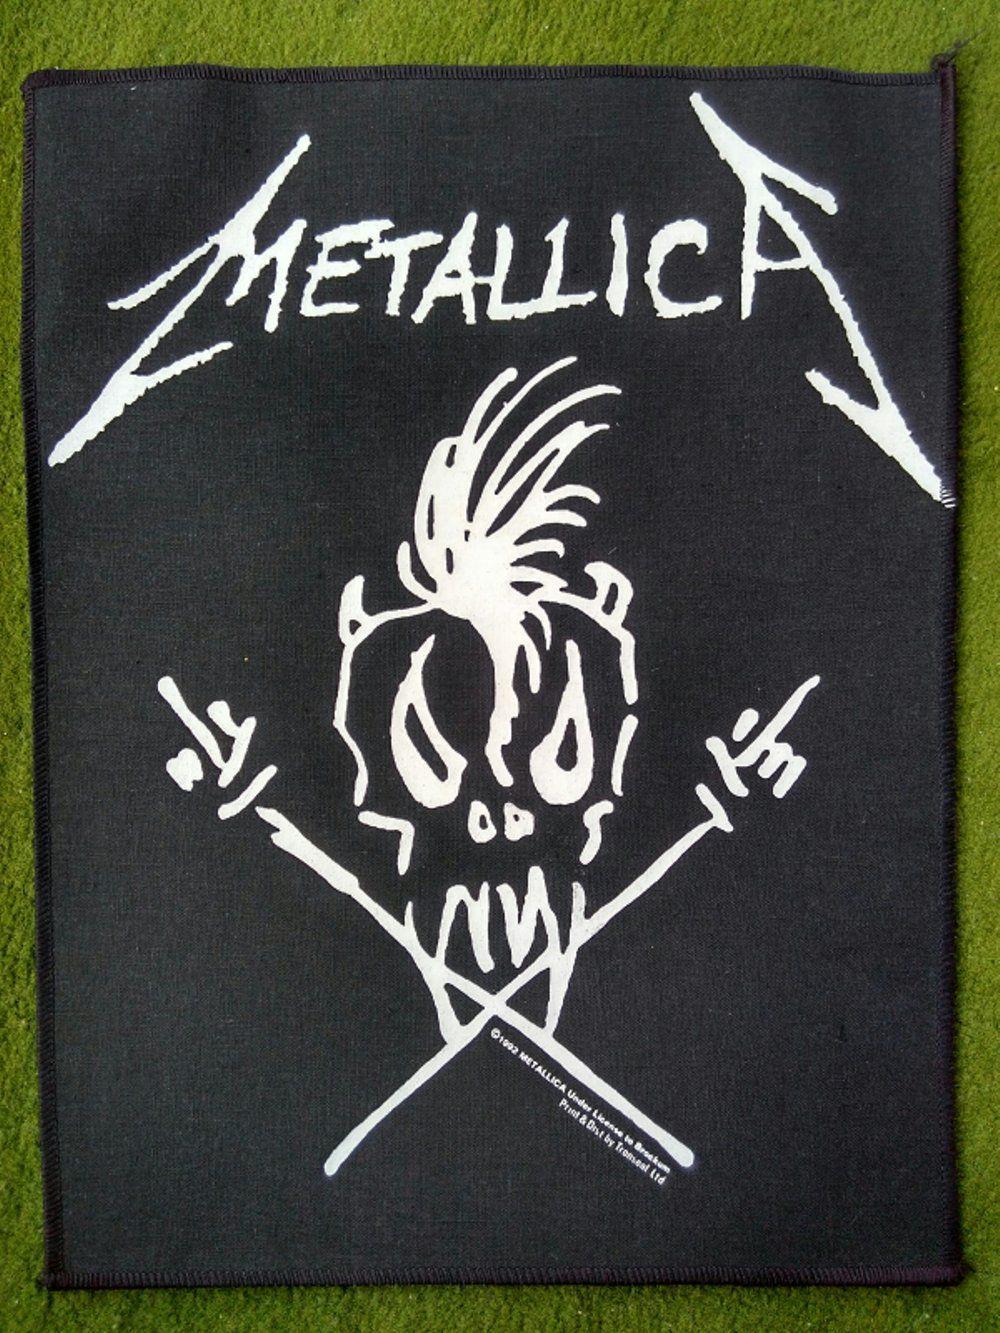 Metallica Skull Logo - Jual Metallica skull logo Scary guy di lapak